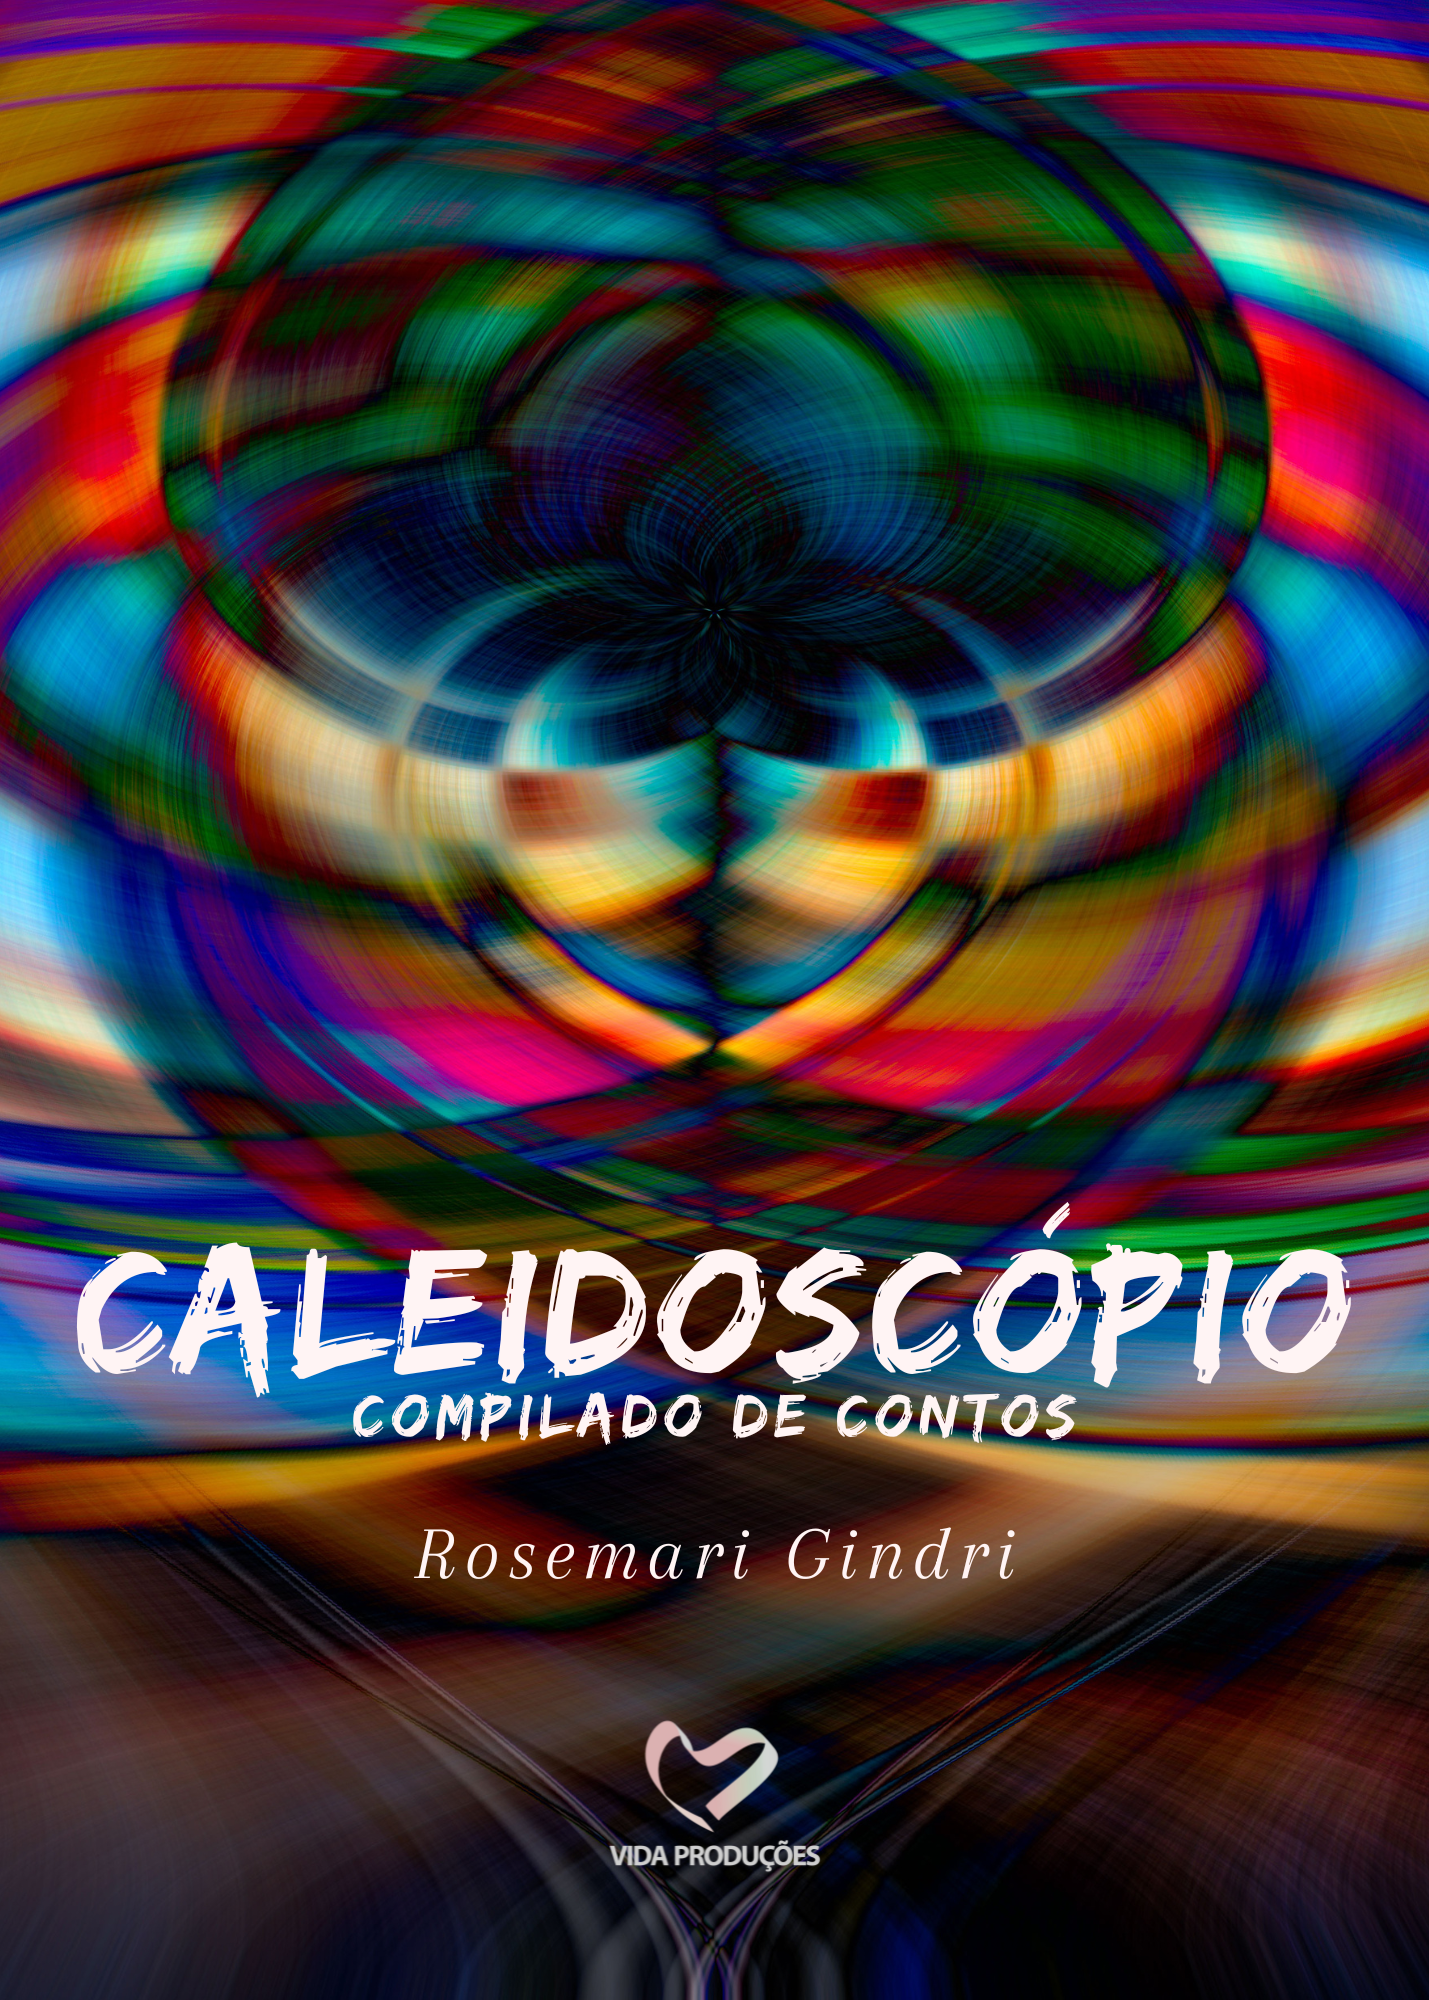 Revista caleidoscópio: literatura e tradução